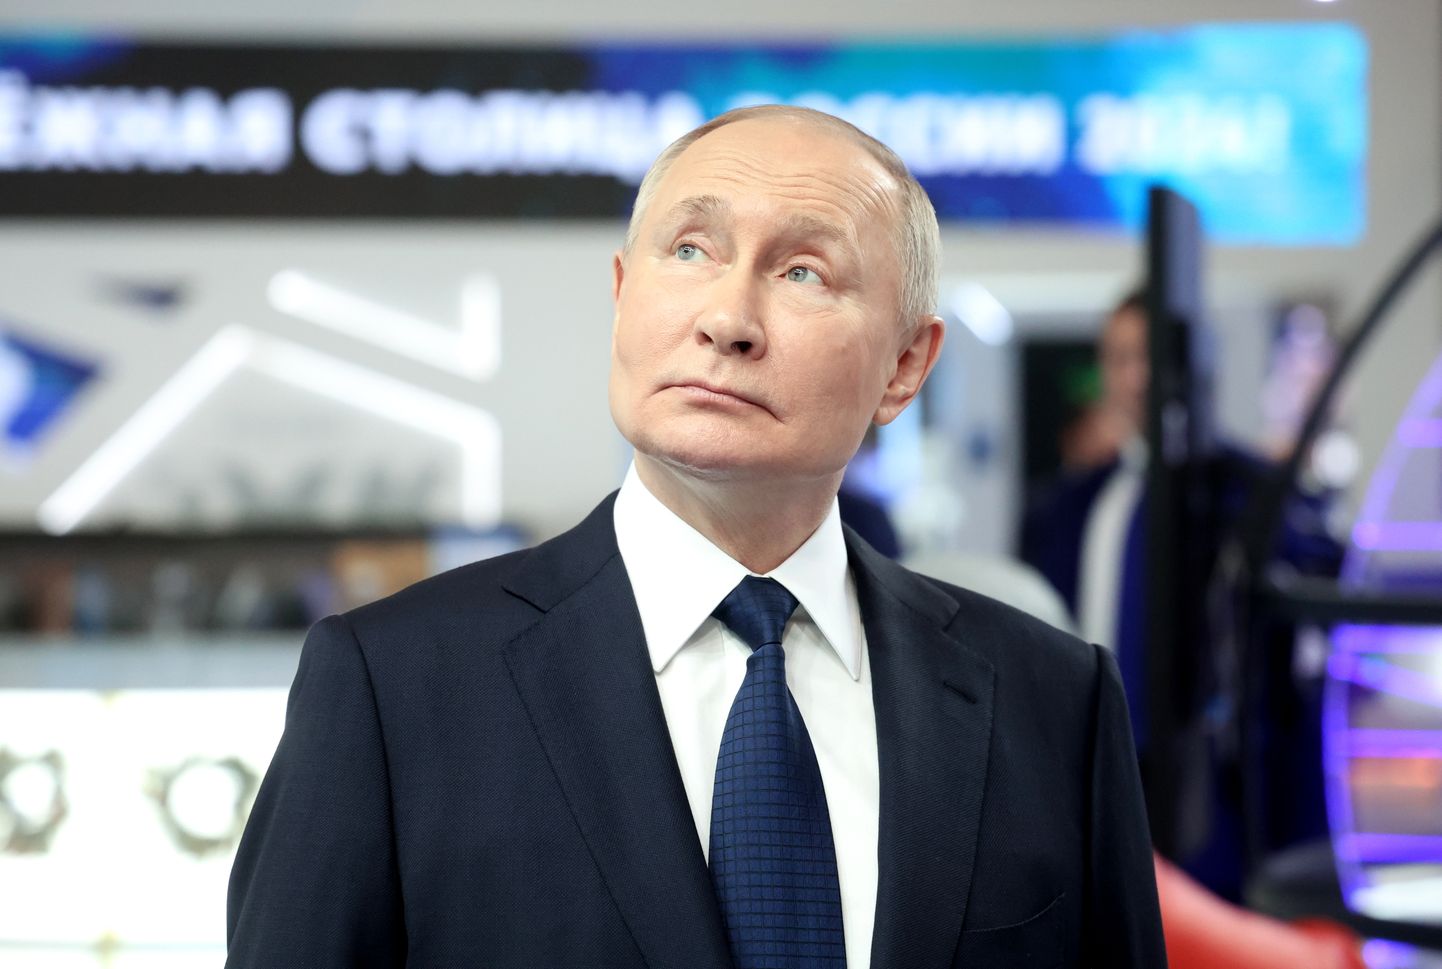 Venemaa president Vladimir Putin 17. detsembril Ühtse Venemaa kongressil rahvamajanduse saavutuste näitust külastamas.